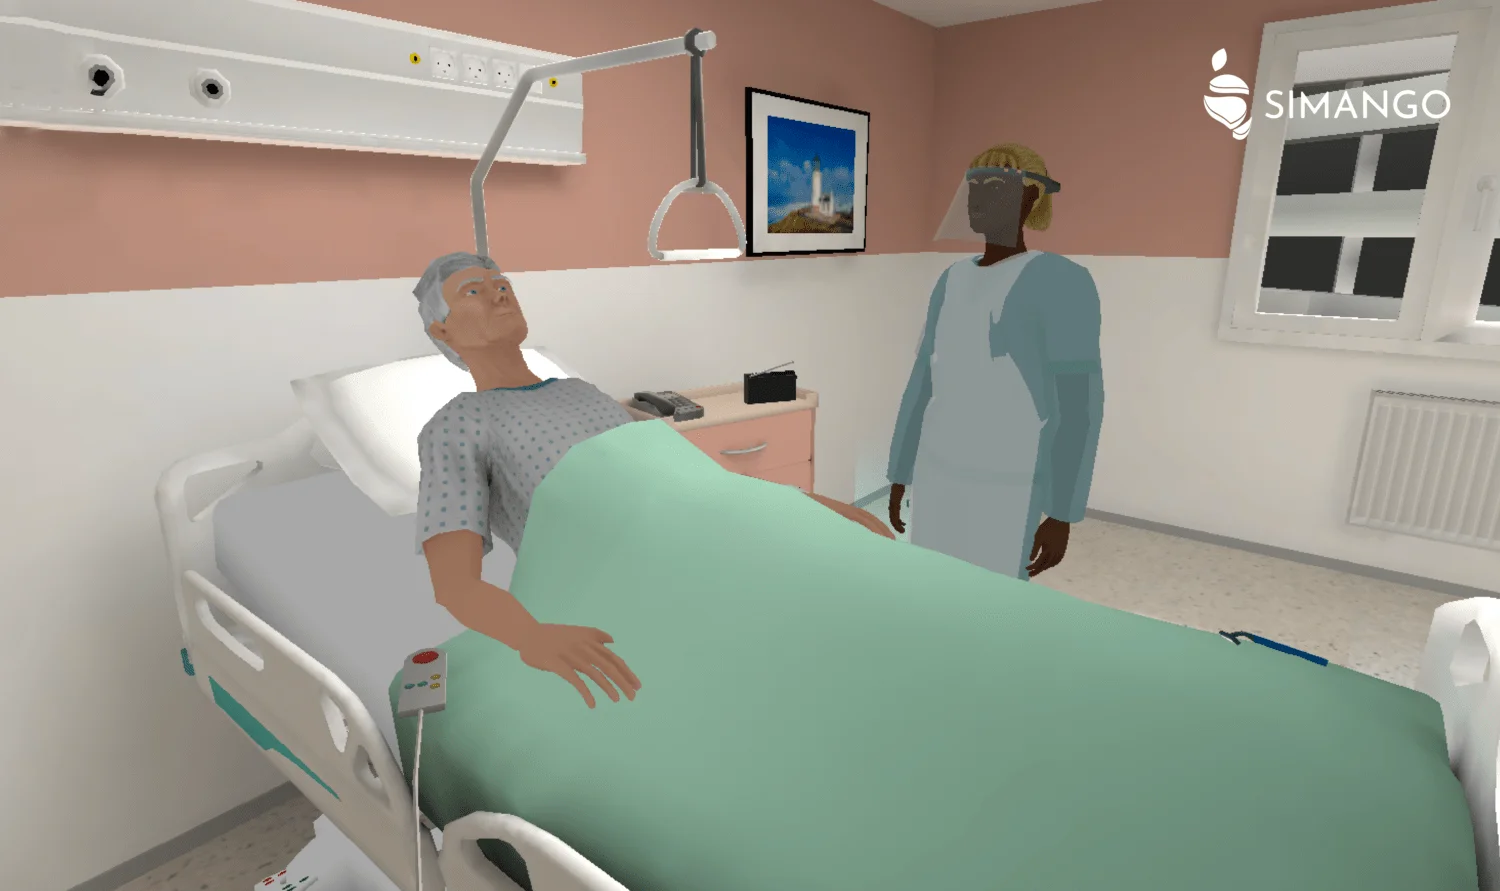 En situation de formation dans une chambre de patient, une professionnelle de santé prend en charge un patient